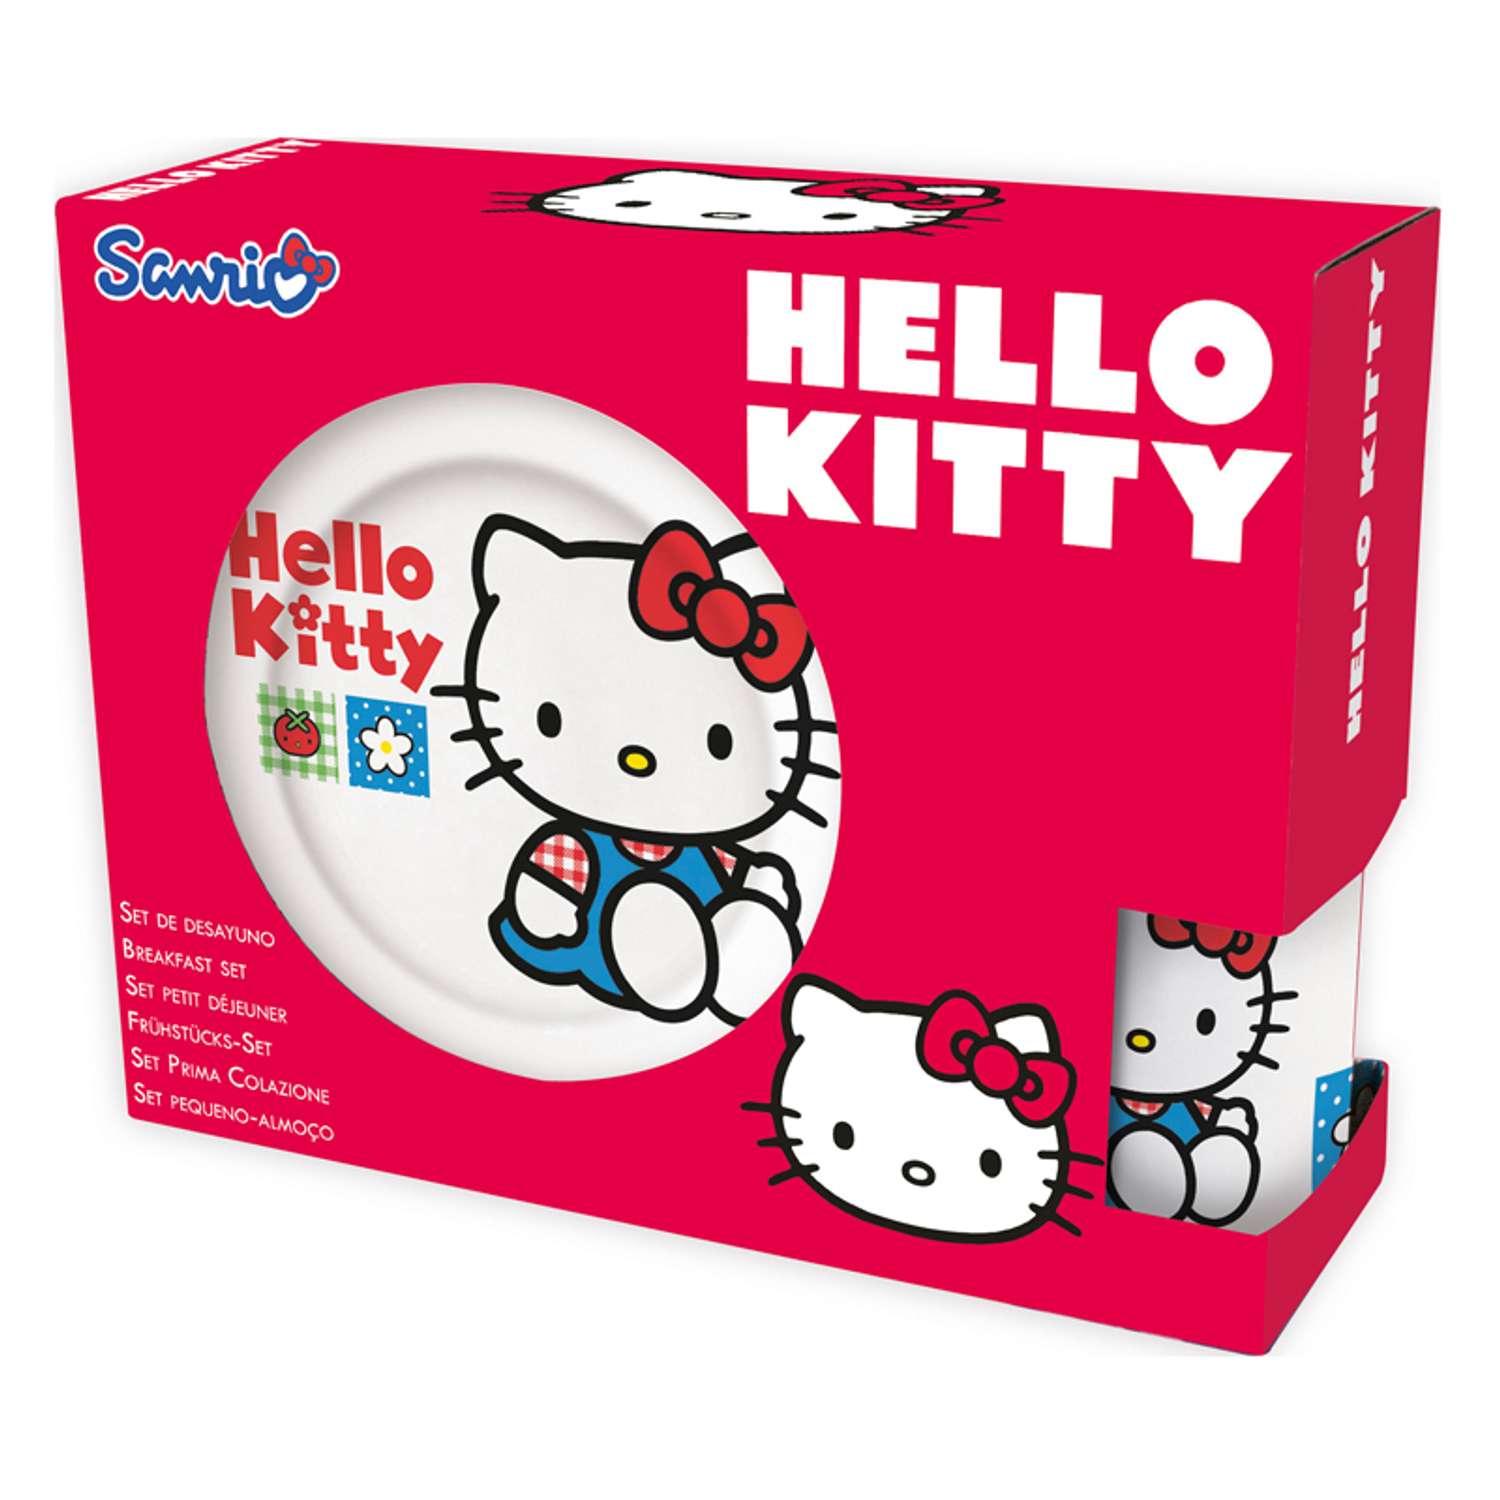 Набор керамической посуды STOR в подарочной упаковке Snack Set Hello Kitty Tomato 1 (3 шт.) - фото 2